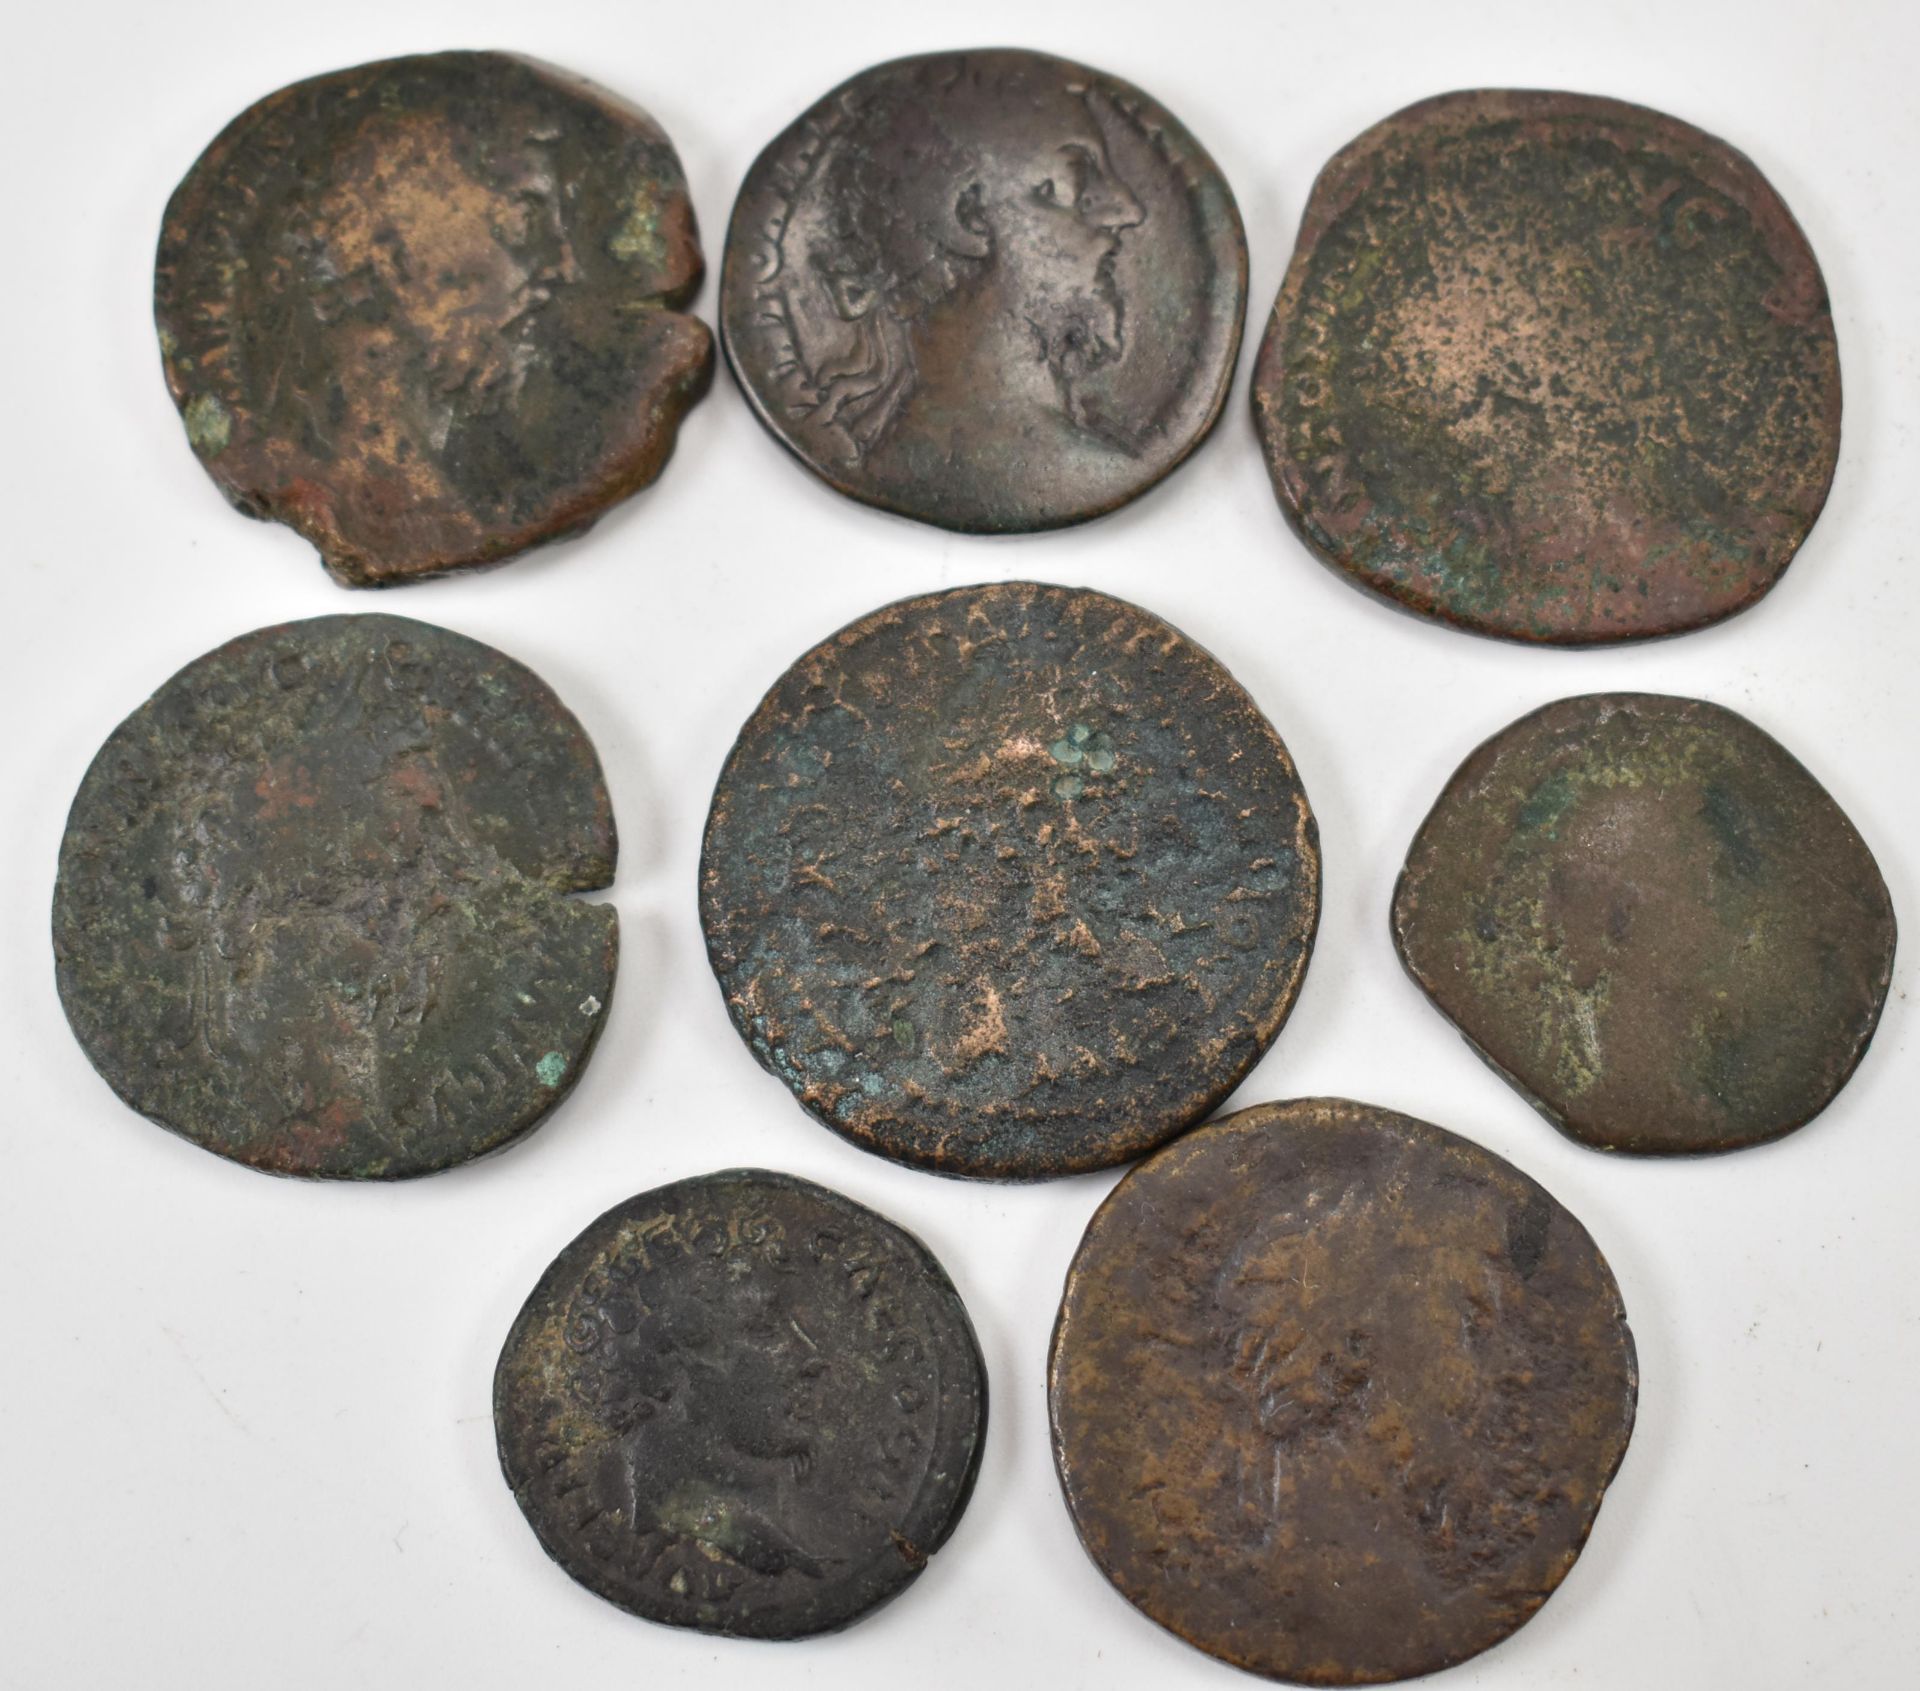 EIGHT ROMAN IMPERIAL COINS FROM MARCUS AURELIUS